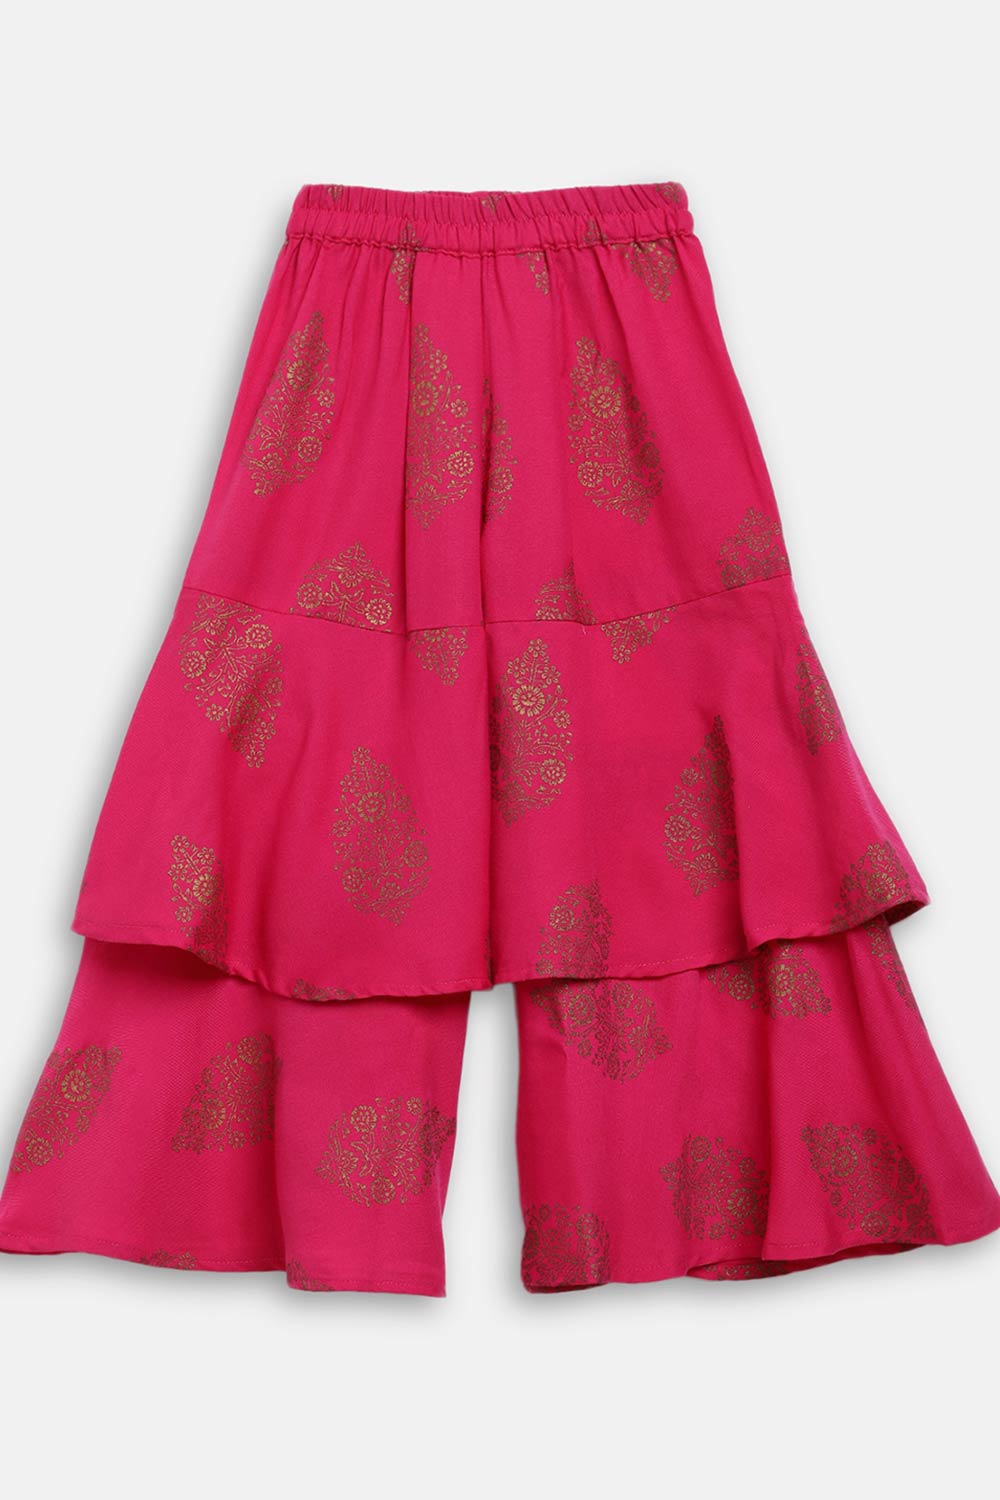 Buy Girl Rayon Printed Kurta Set in Pink Online - Side